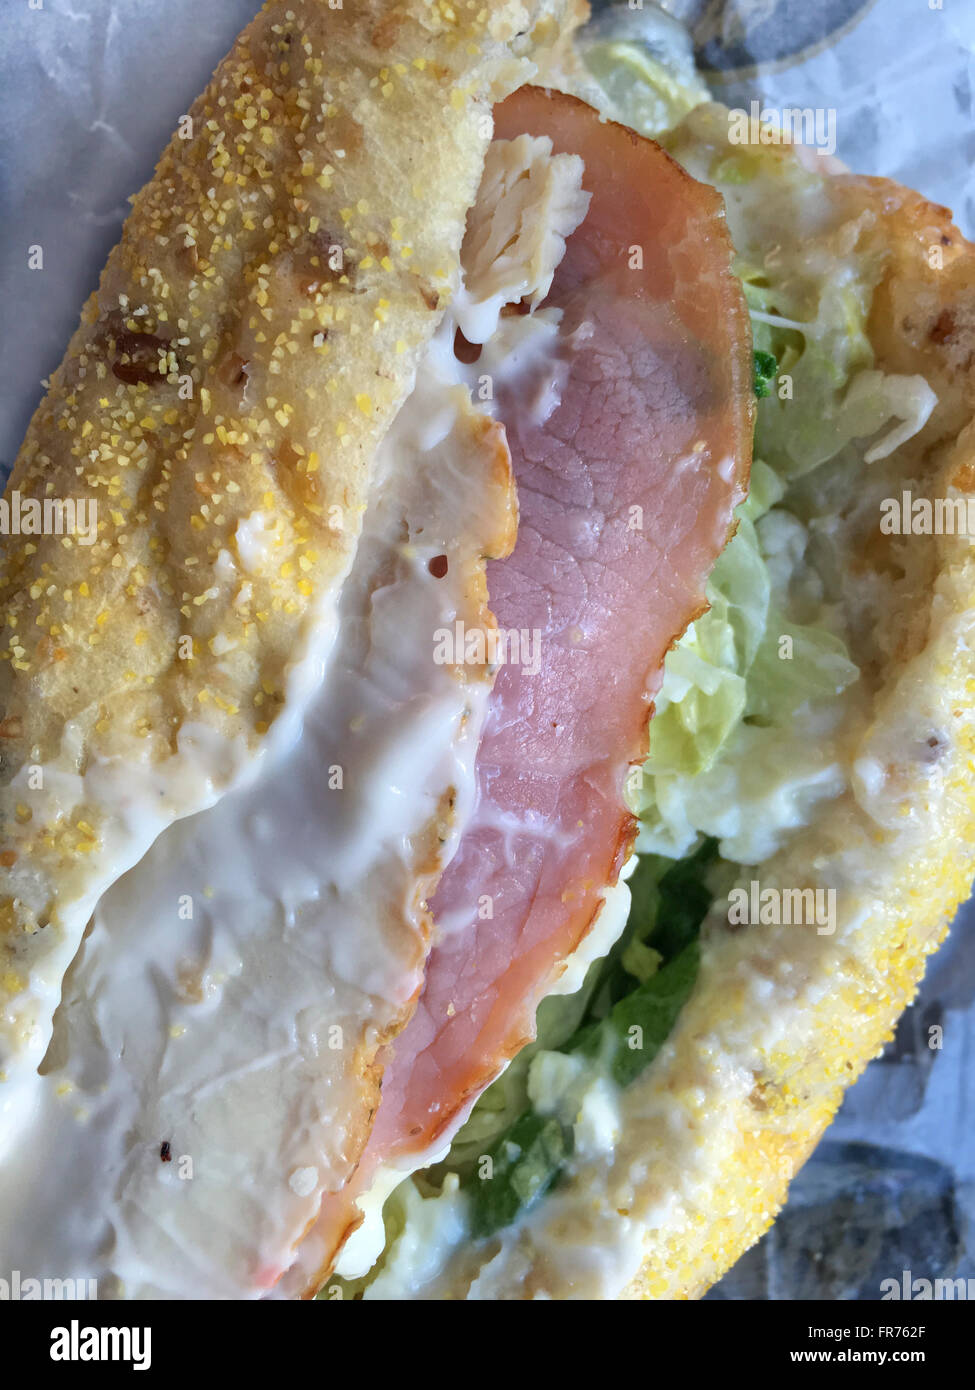 Primo piano di un sommergibile con sandwich di pollo, prosciutto, lattuga, spinaci, formaggio e maionese su multi-pane di grano. Foto Stock